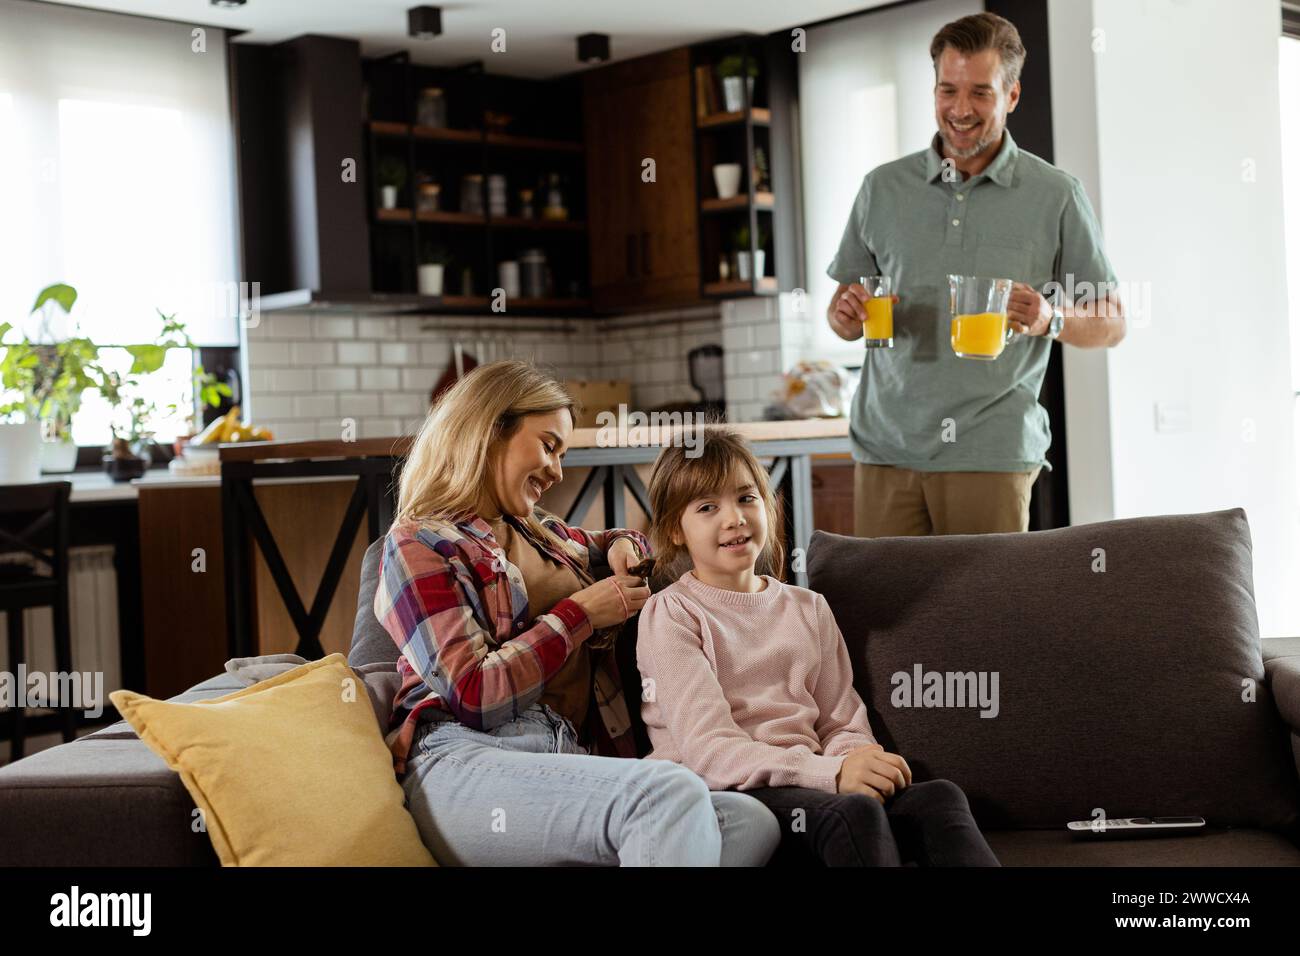 Un père souriant apporte un plateau de jus d'orange à sa famille heureuse assise dans un salon Banque D'Images